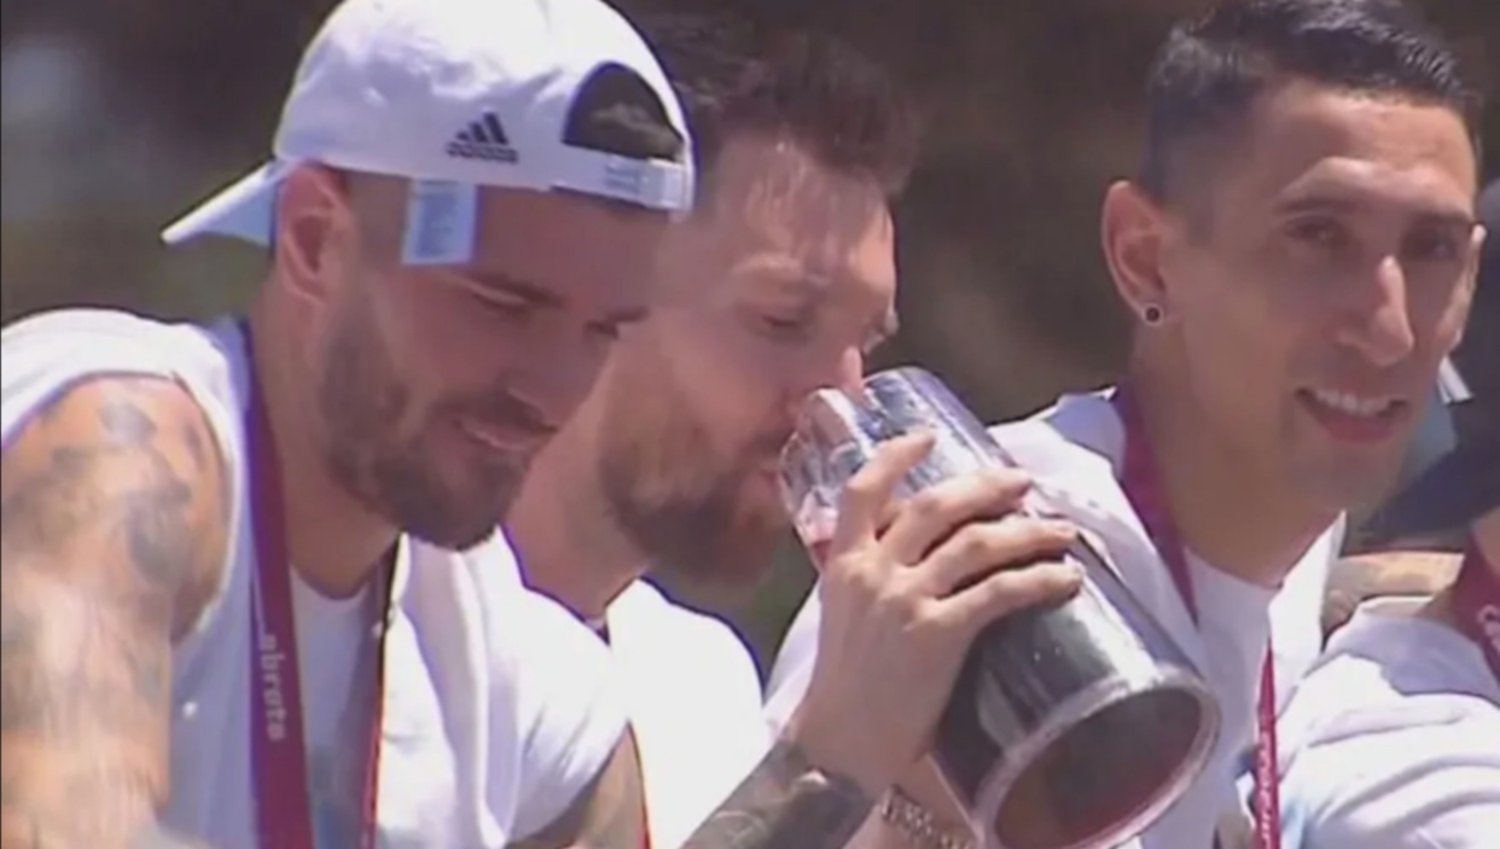 Messi, Paredes, De Paul, Di María y Otamendi bien argentos: en plena caravana iban tomando coca con fernet en botella cortada